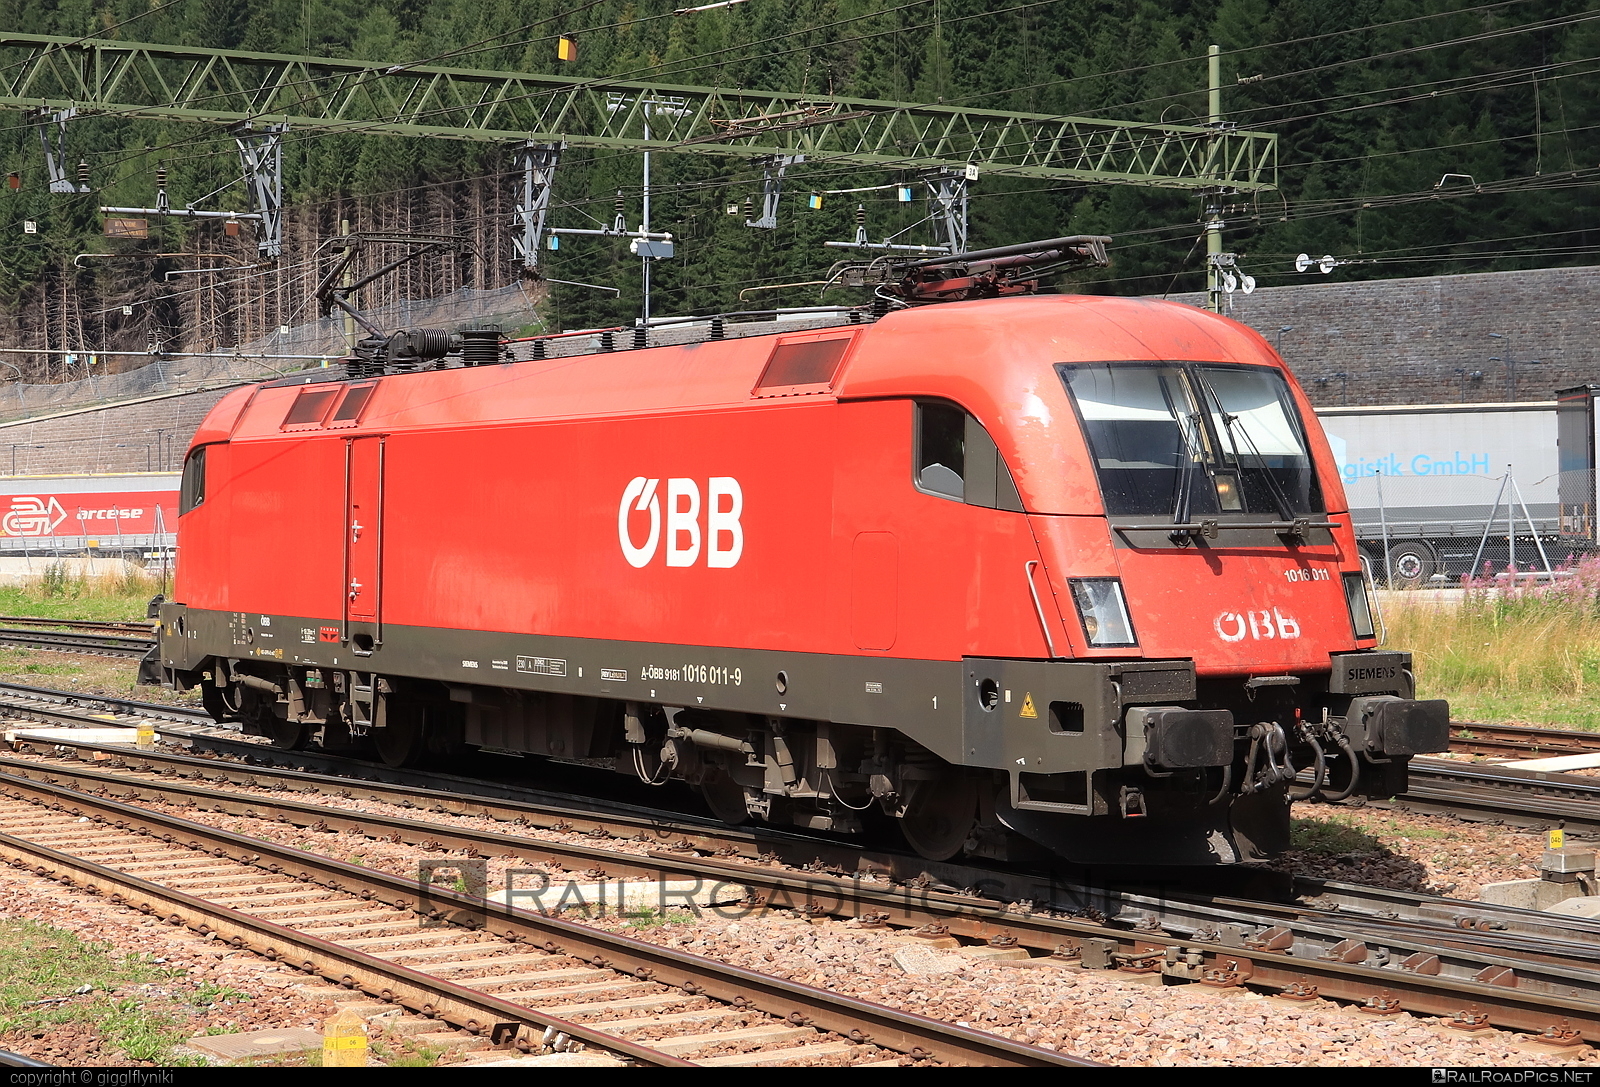 Siemens ES 64 U2 - 1016 011 operated by Österreichische Bundesbahnen #es64 #es64u2 #eurosprinter #obb #osterreichischebundesbahnen #siemens #siemensEs64 #siemensEs64u2 #siemenstaurus #taurus #tauruslocomotive